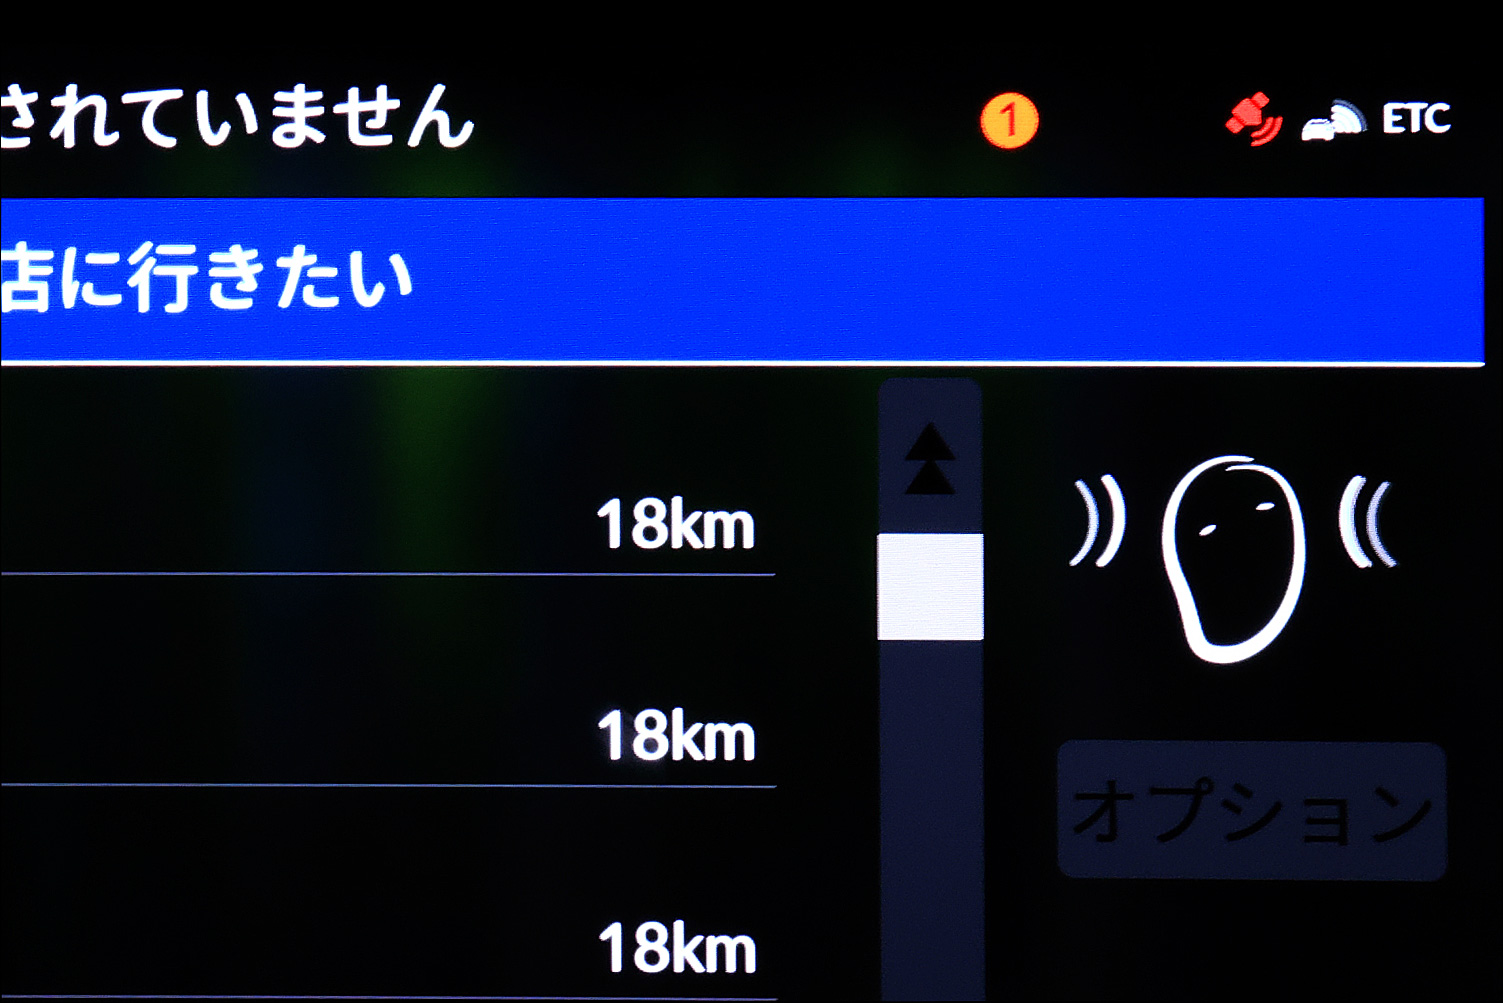 フィアット同様、各所に開発者の遊び心がみられる「ホンダe」だが、それらの演出もいかにも親切というか日本的。音声操作を試みるとセンターディスプレイにマスコットが登場し、システムの作動状態をドライバーに知らせてくれる。